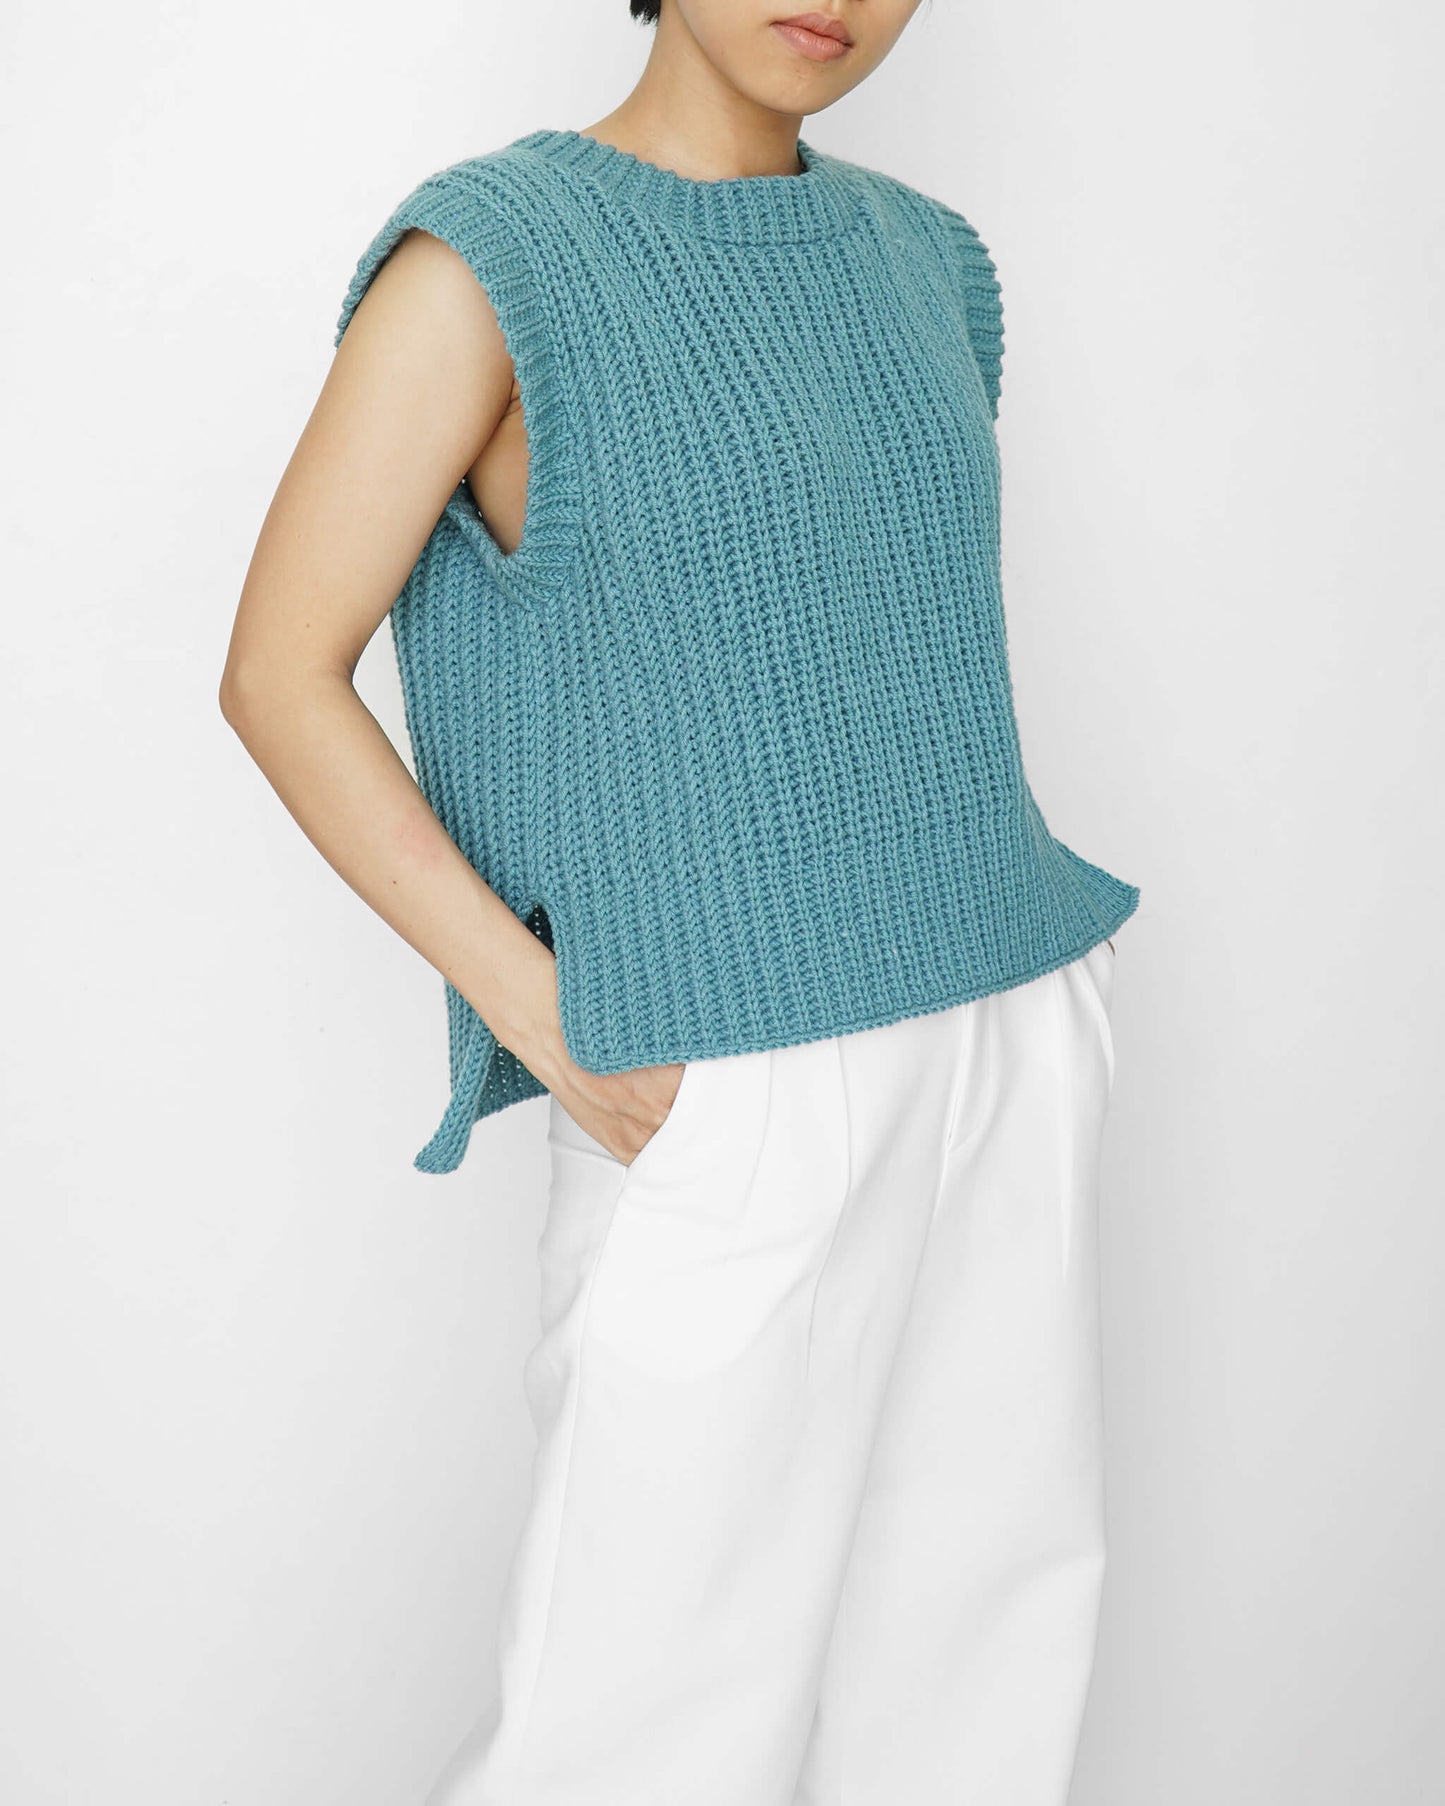 Easy crochet ribbed vest pattern